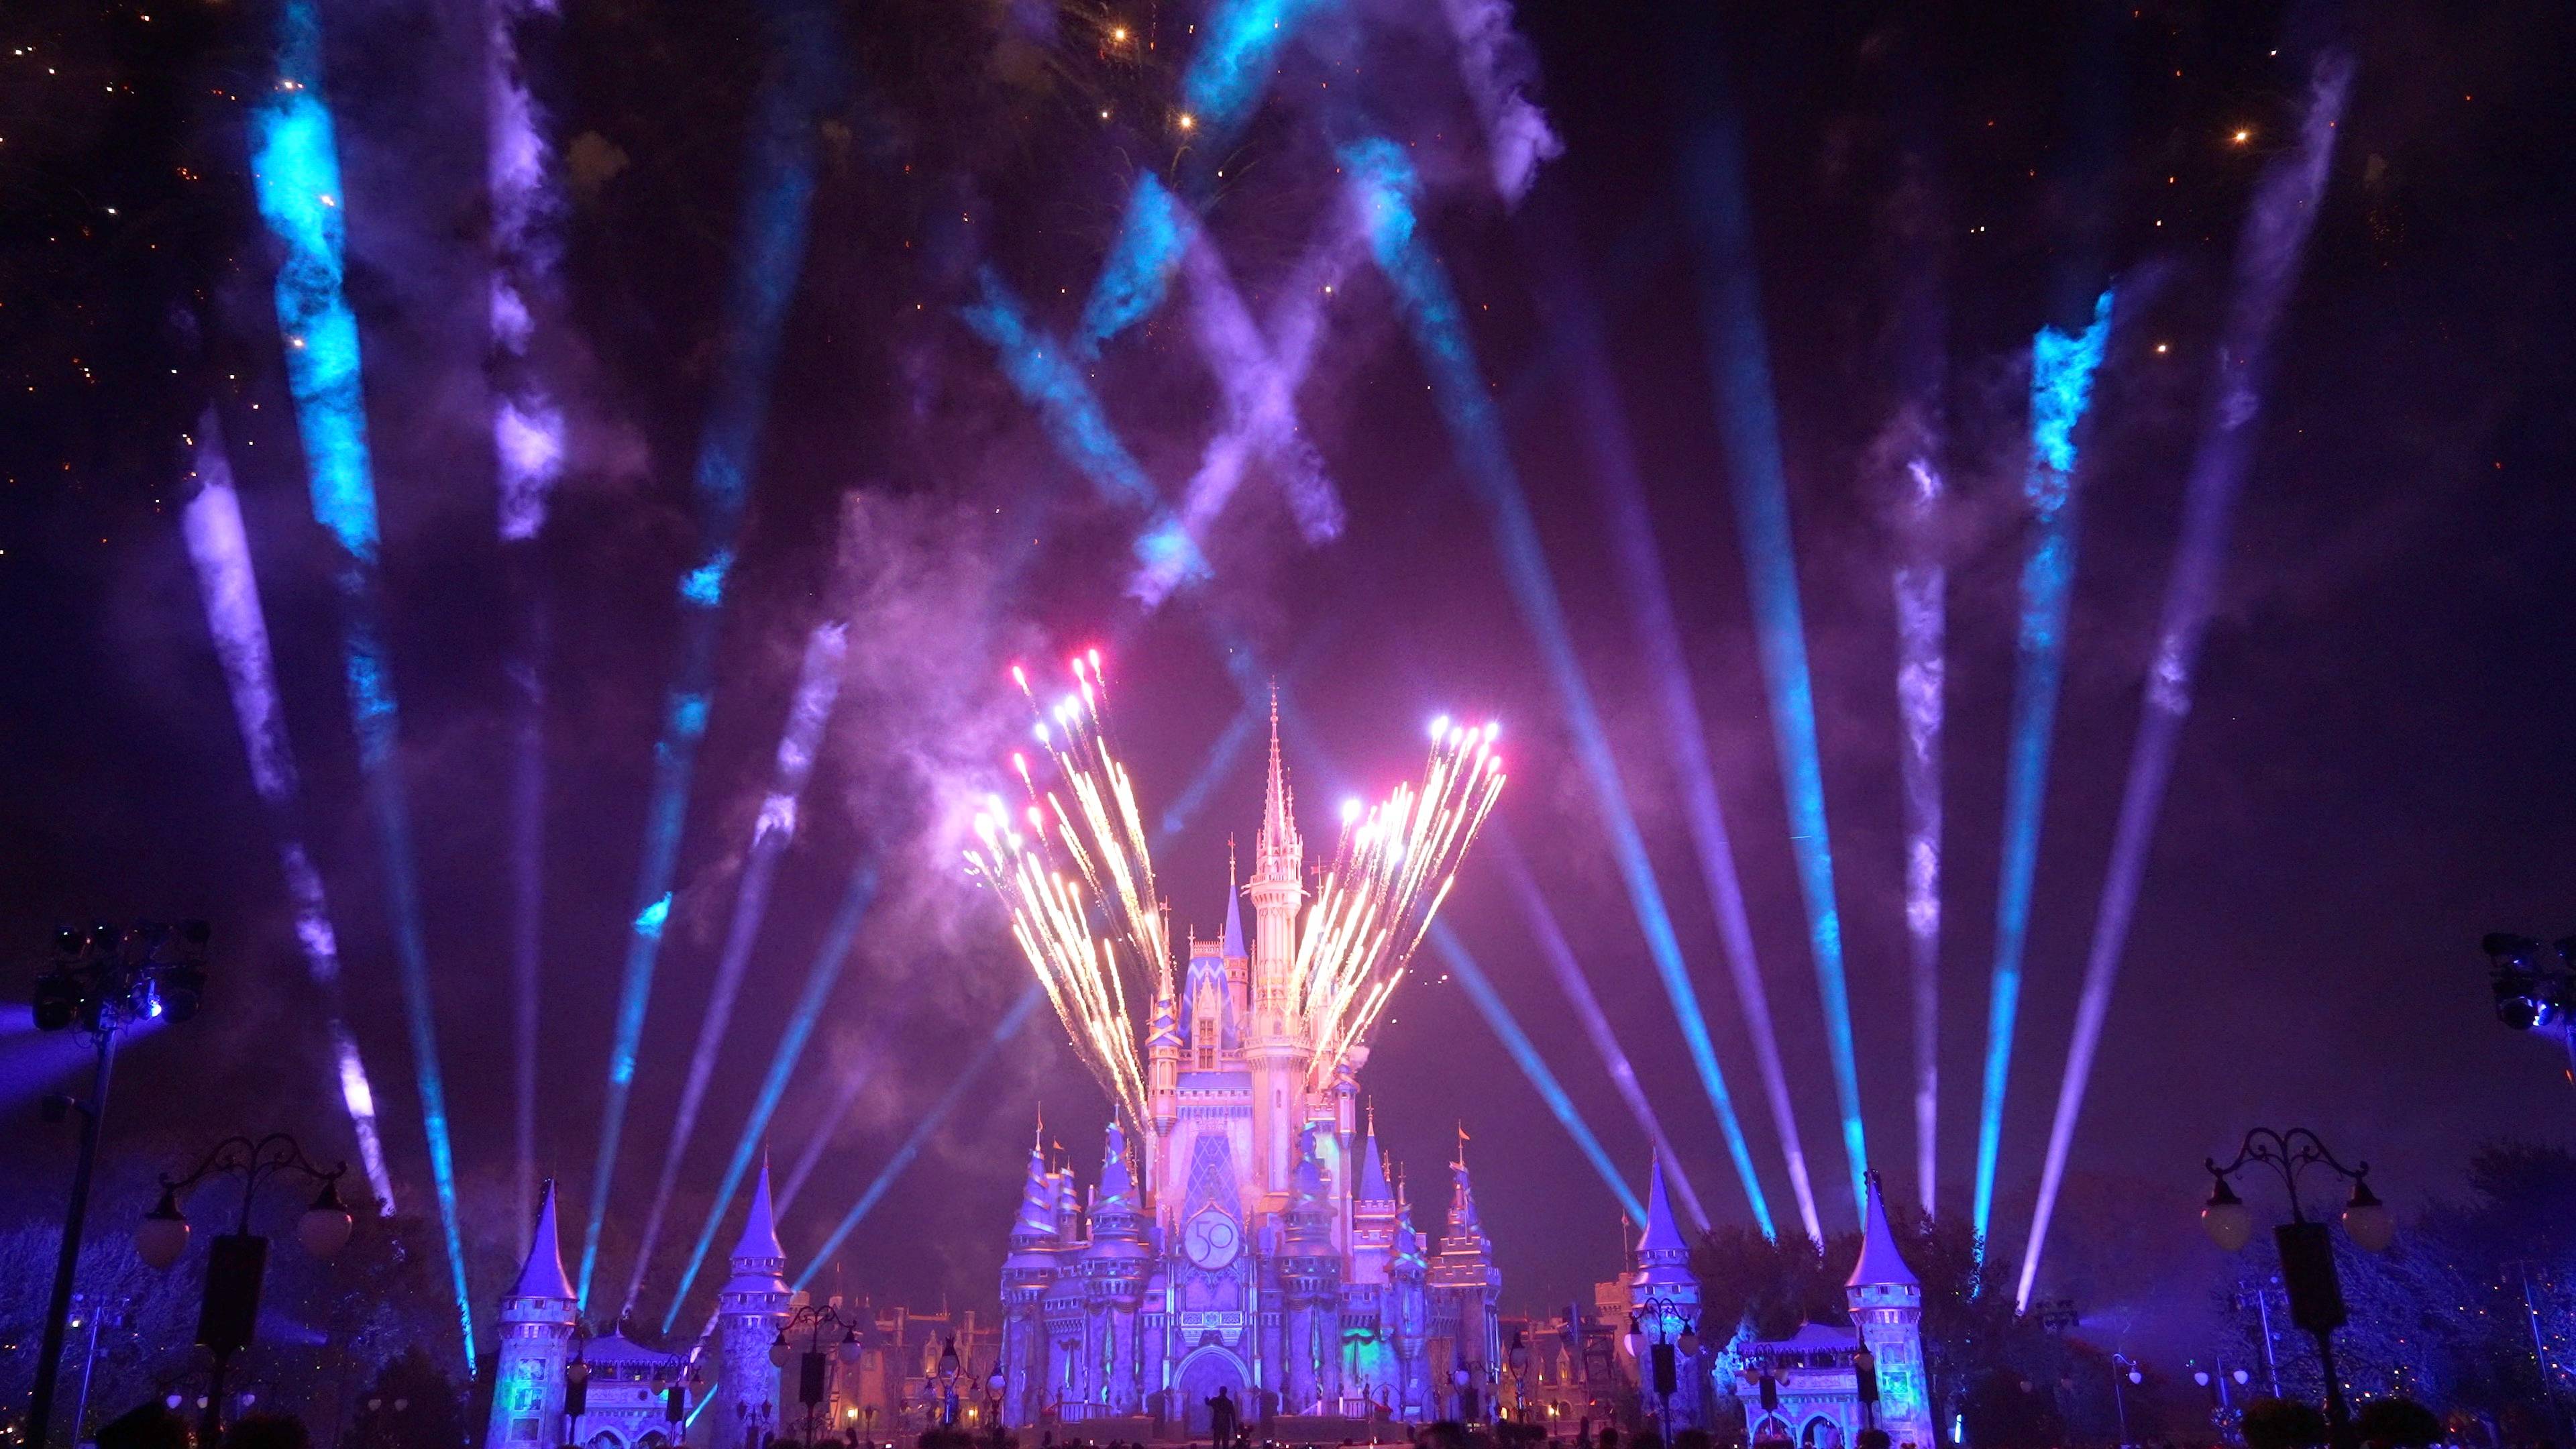 Minnie's Wonderful Christmastime Fireworks show 2021